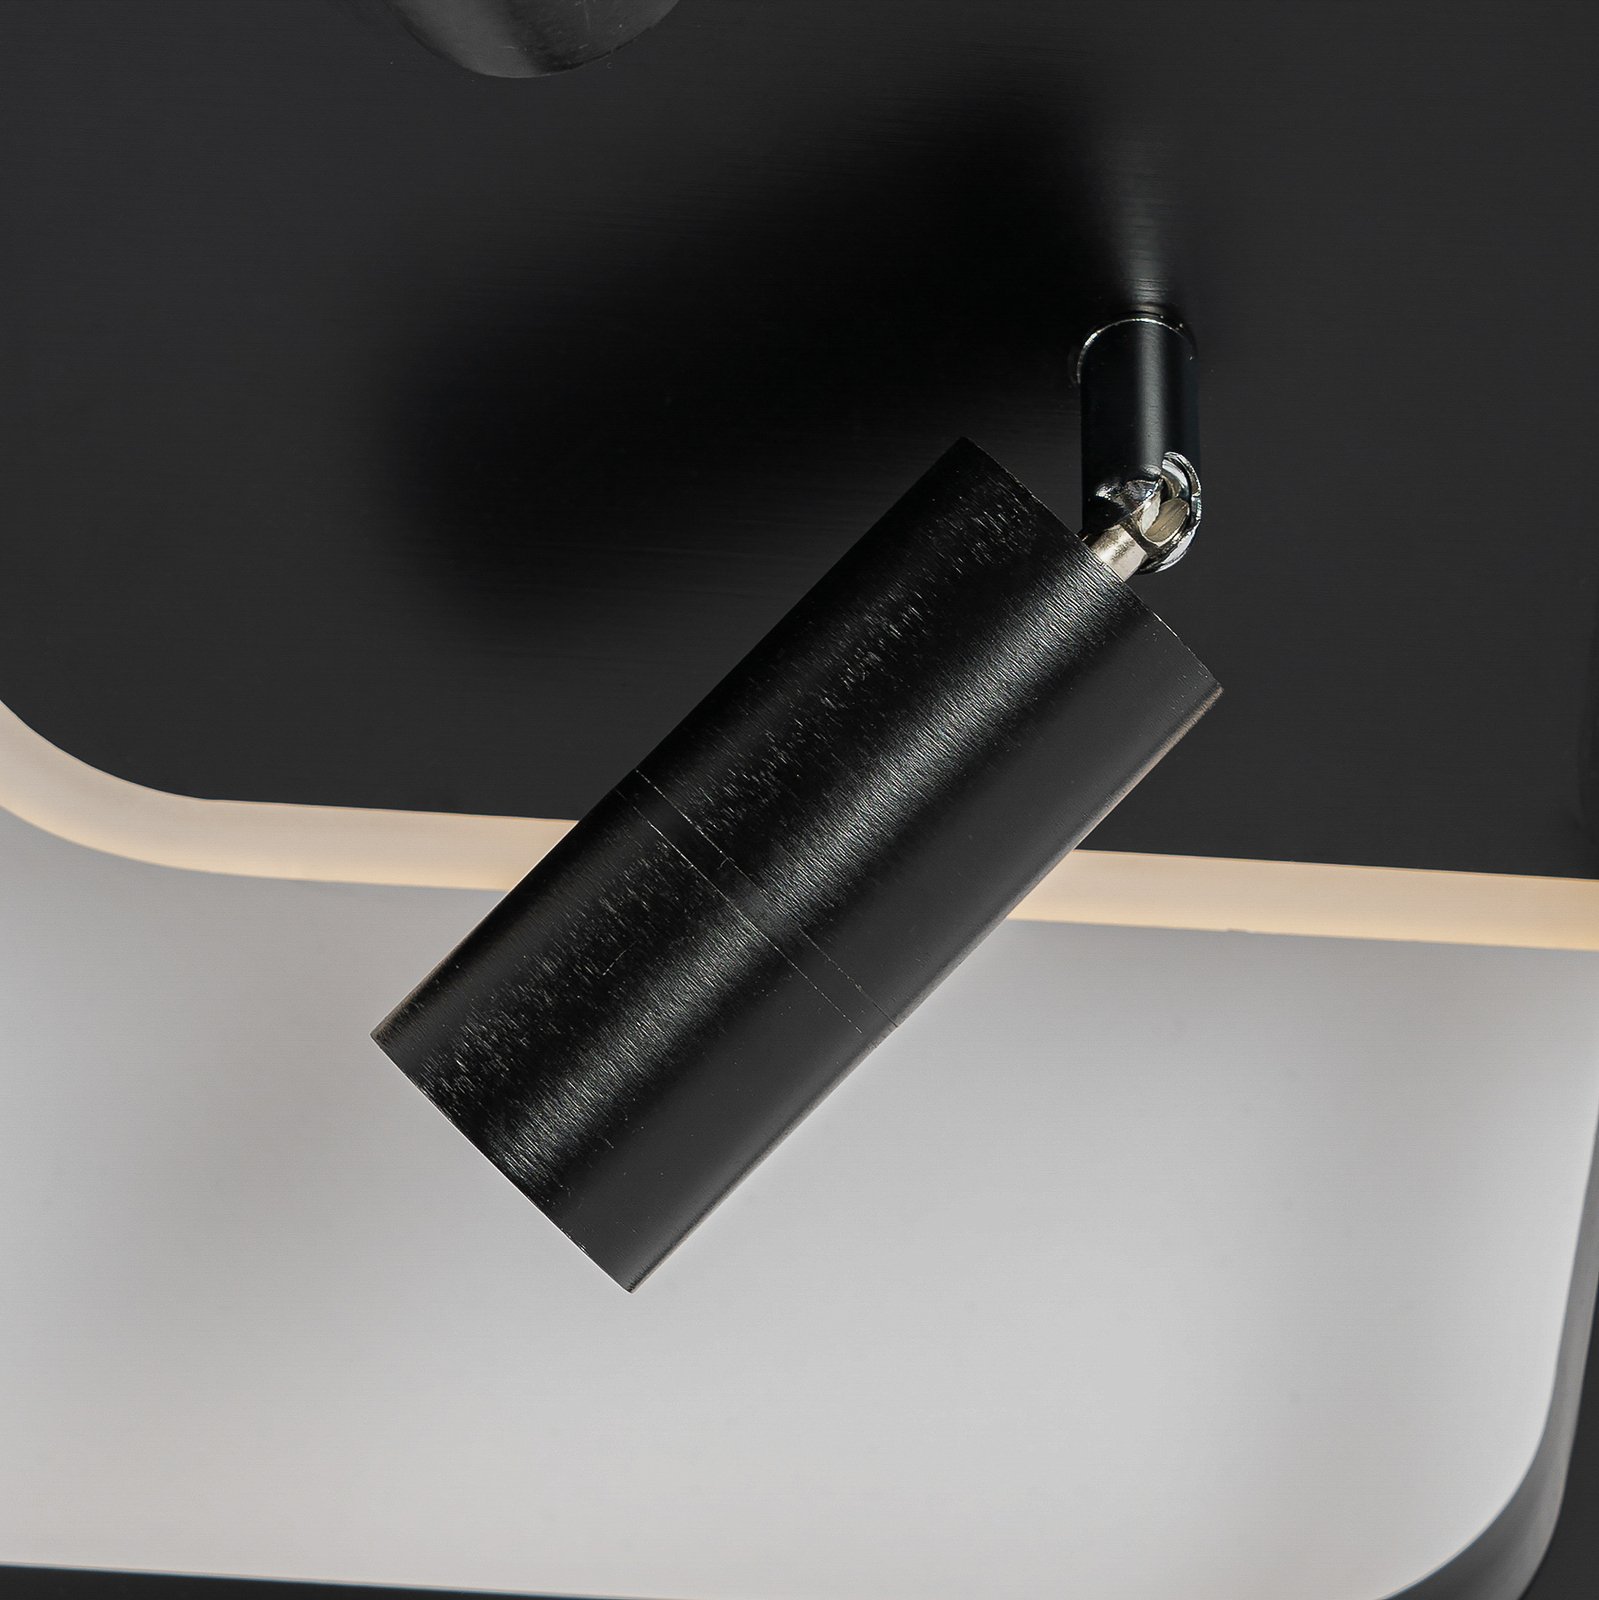 Lucande Tival LED stropní svítidlo hranaté, 43 cm, černé